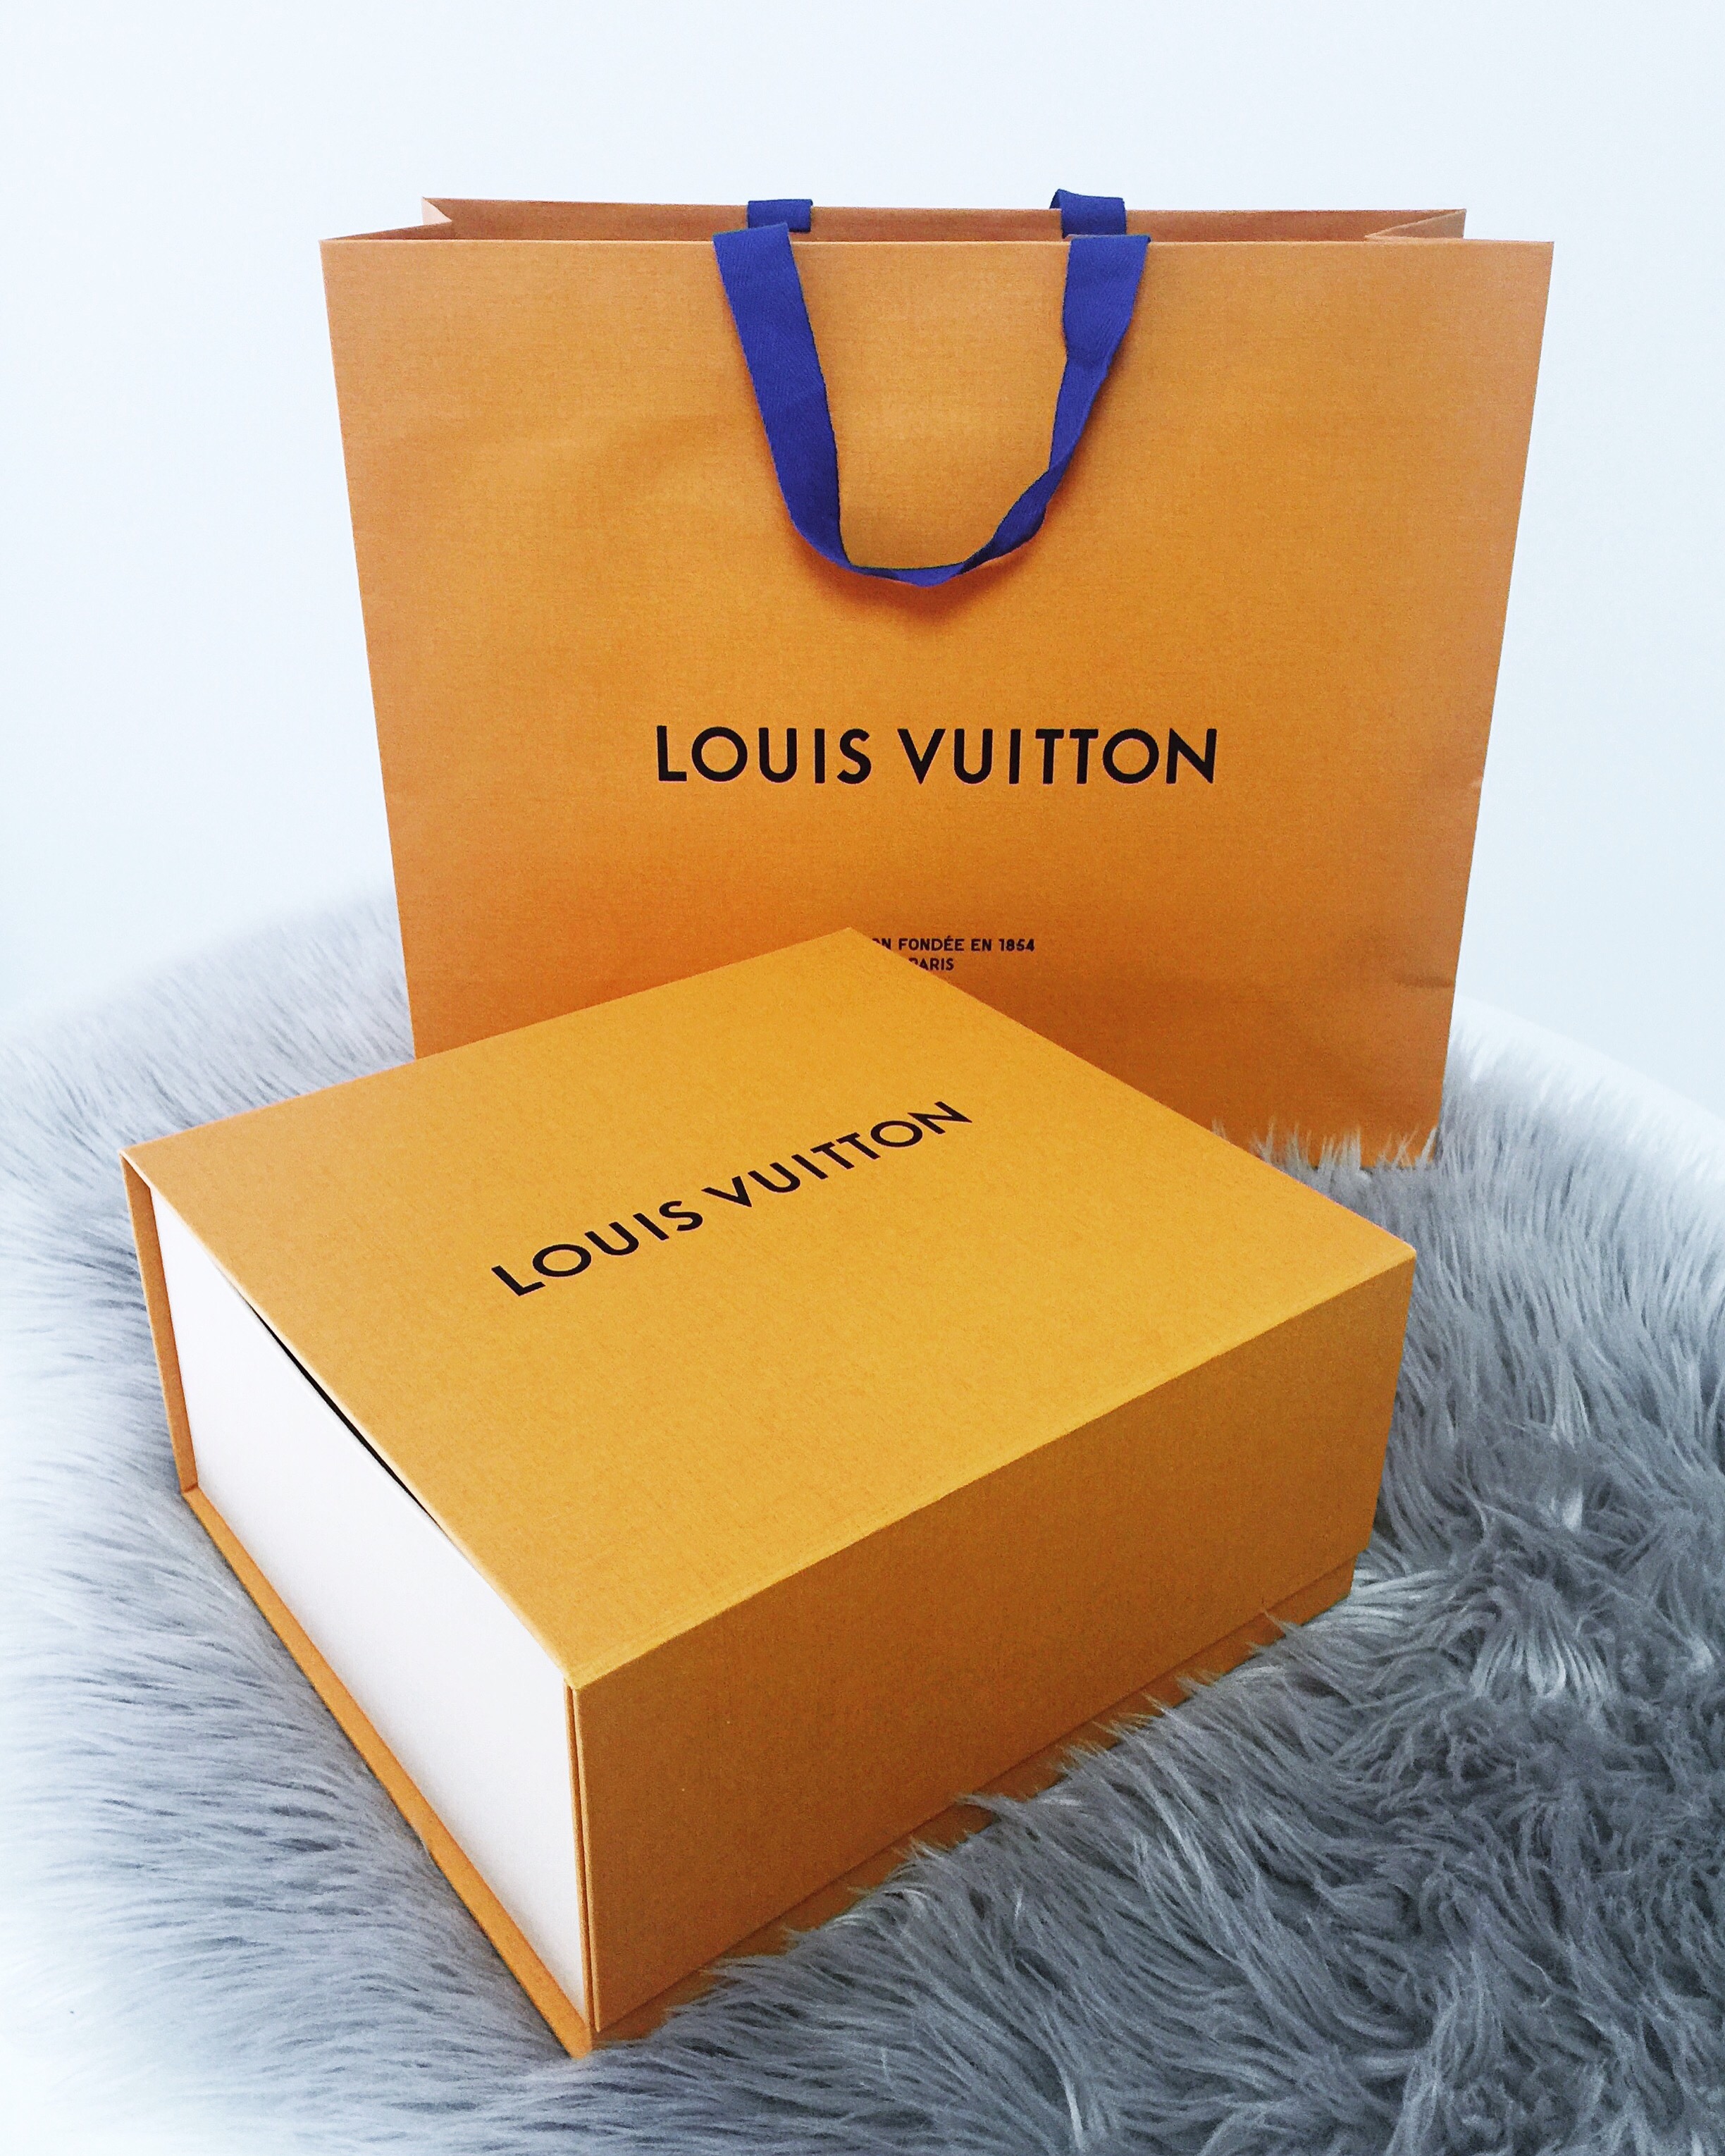 Unboxing Louis Vuitton Pochette Metis